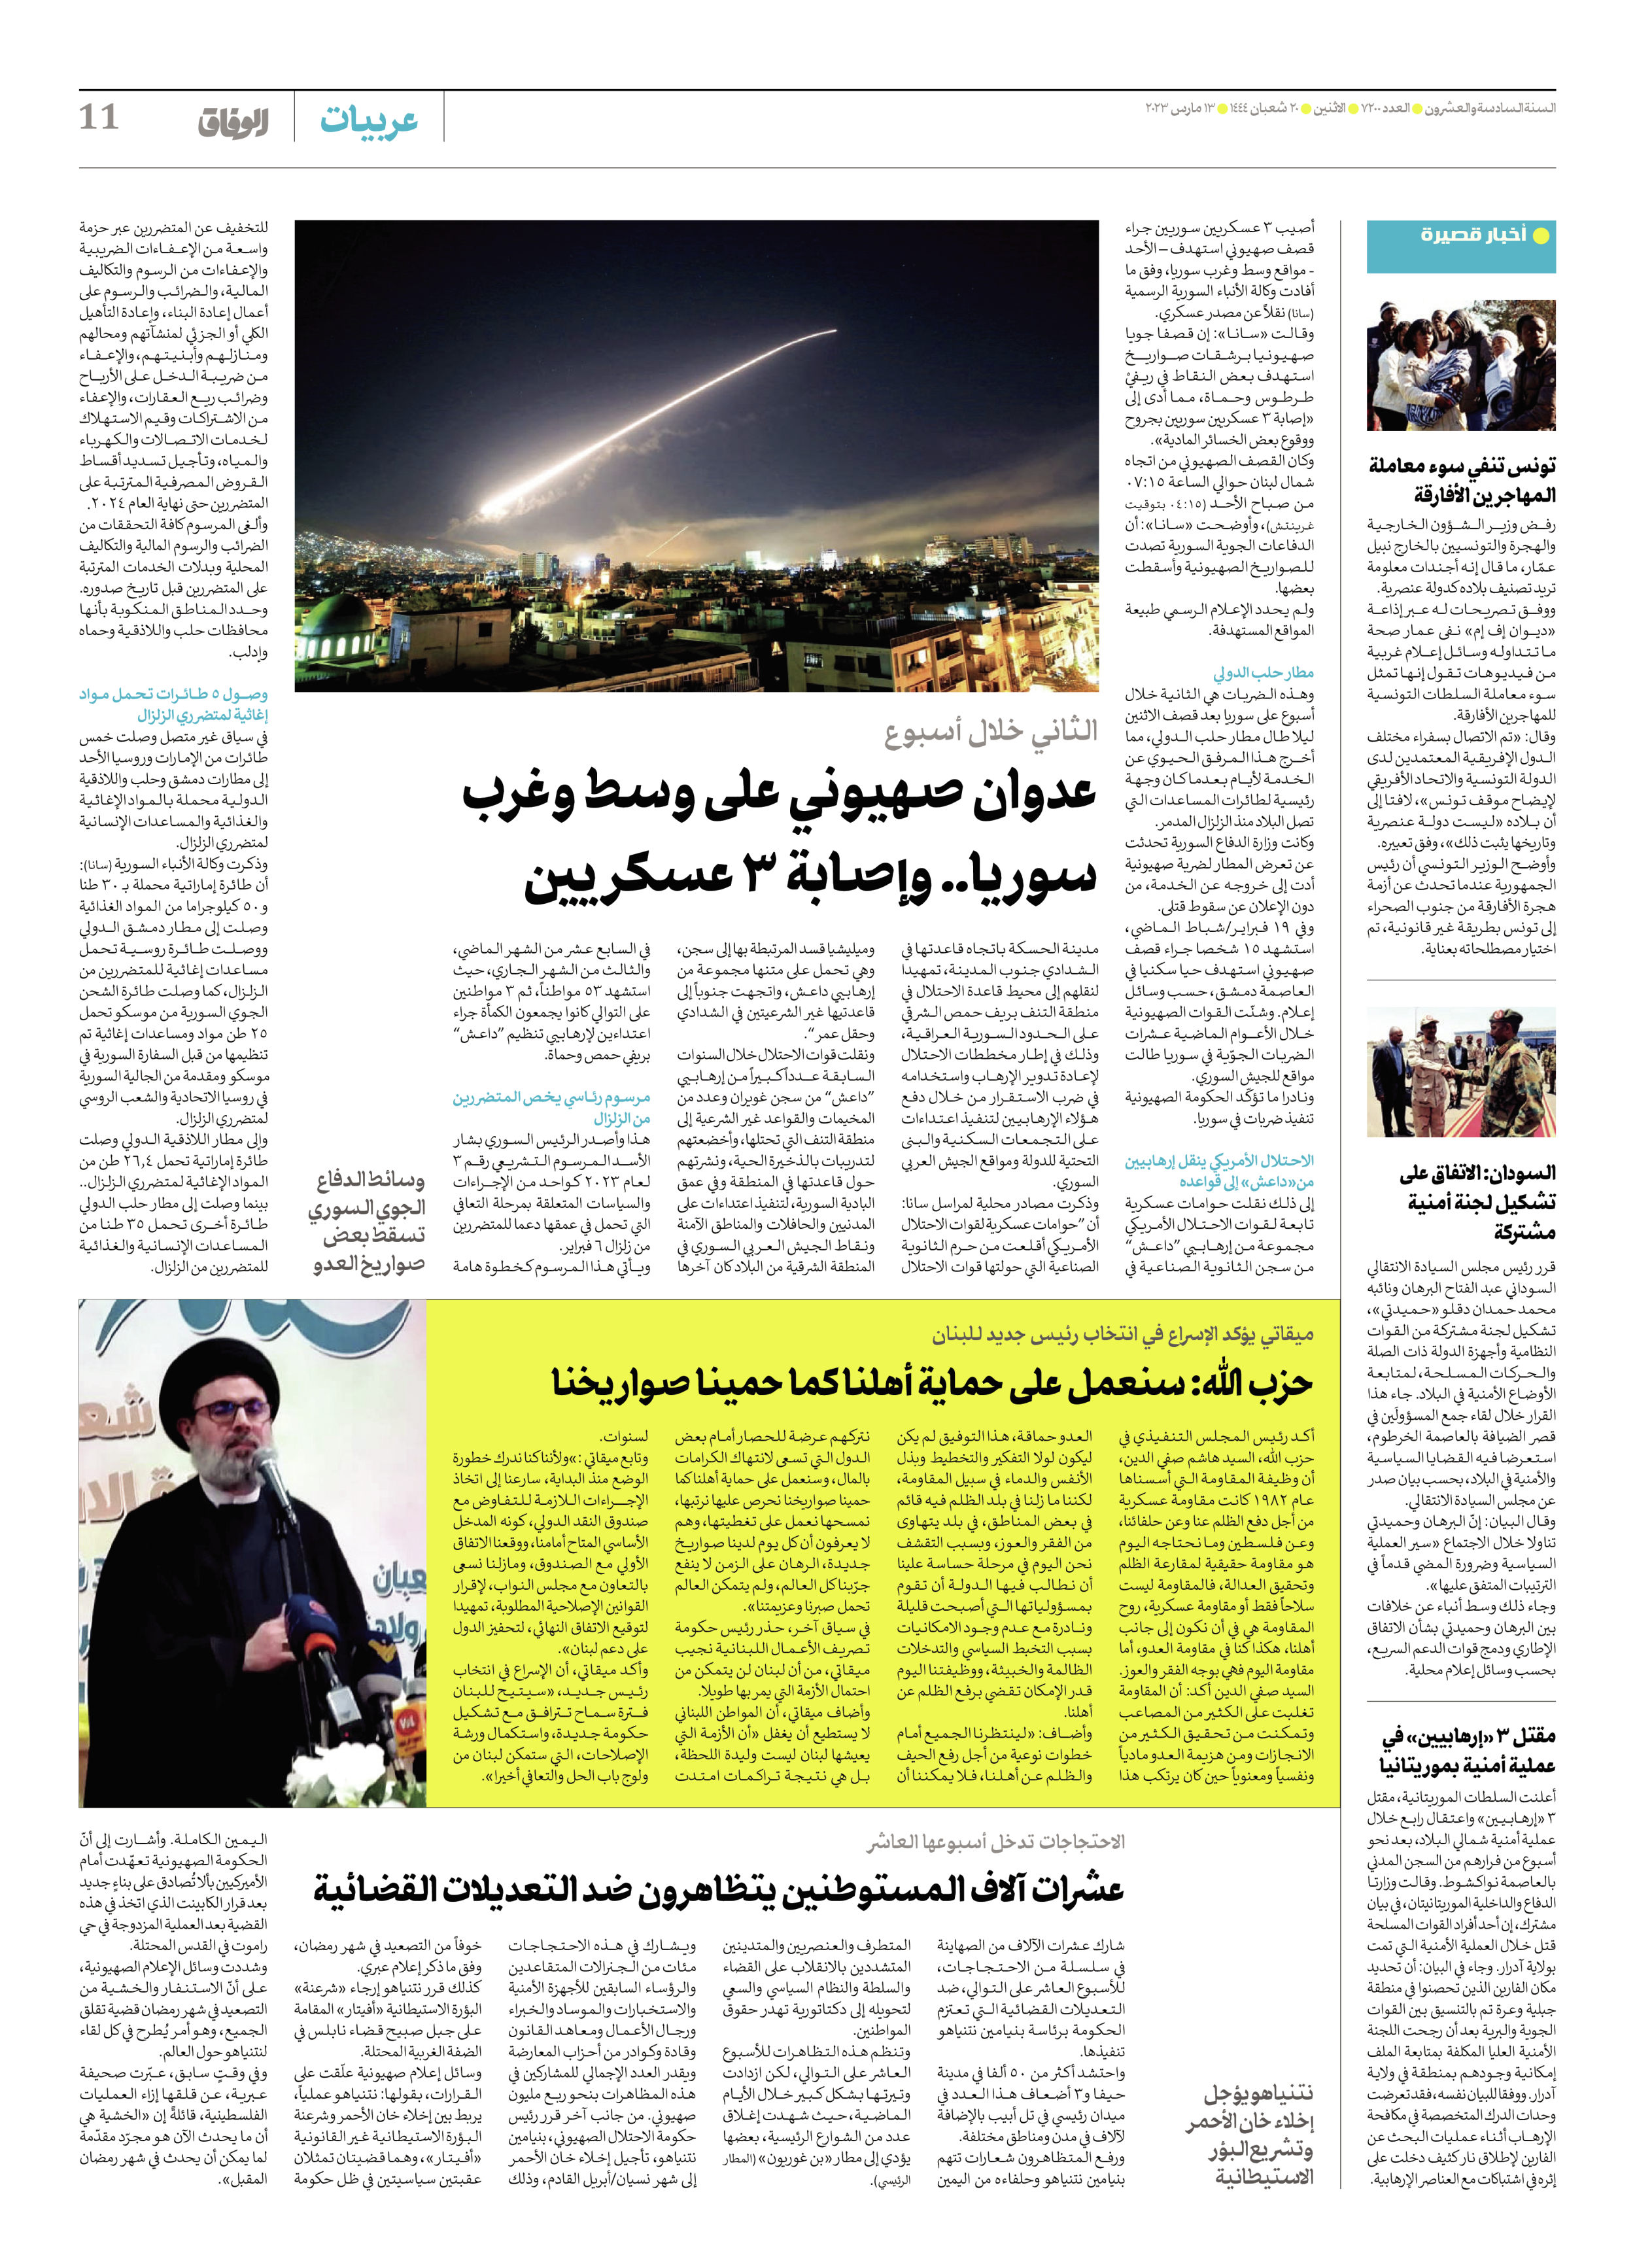 صحیفة ایران الدولیة الوفاق - العدد سبعة آلاف ومائتان - ١٣ مارس ٢٠٢٣ - الصفحة ۱۱